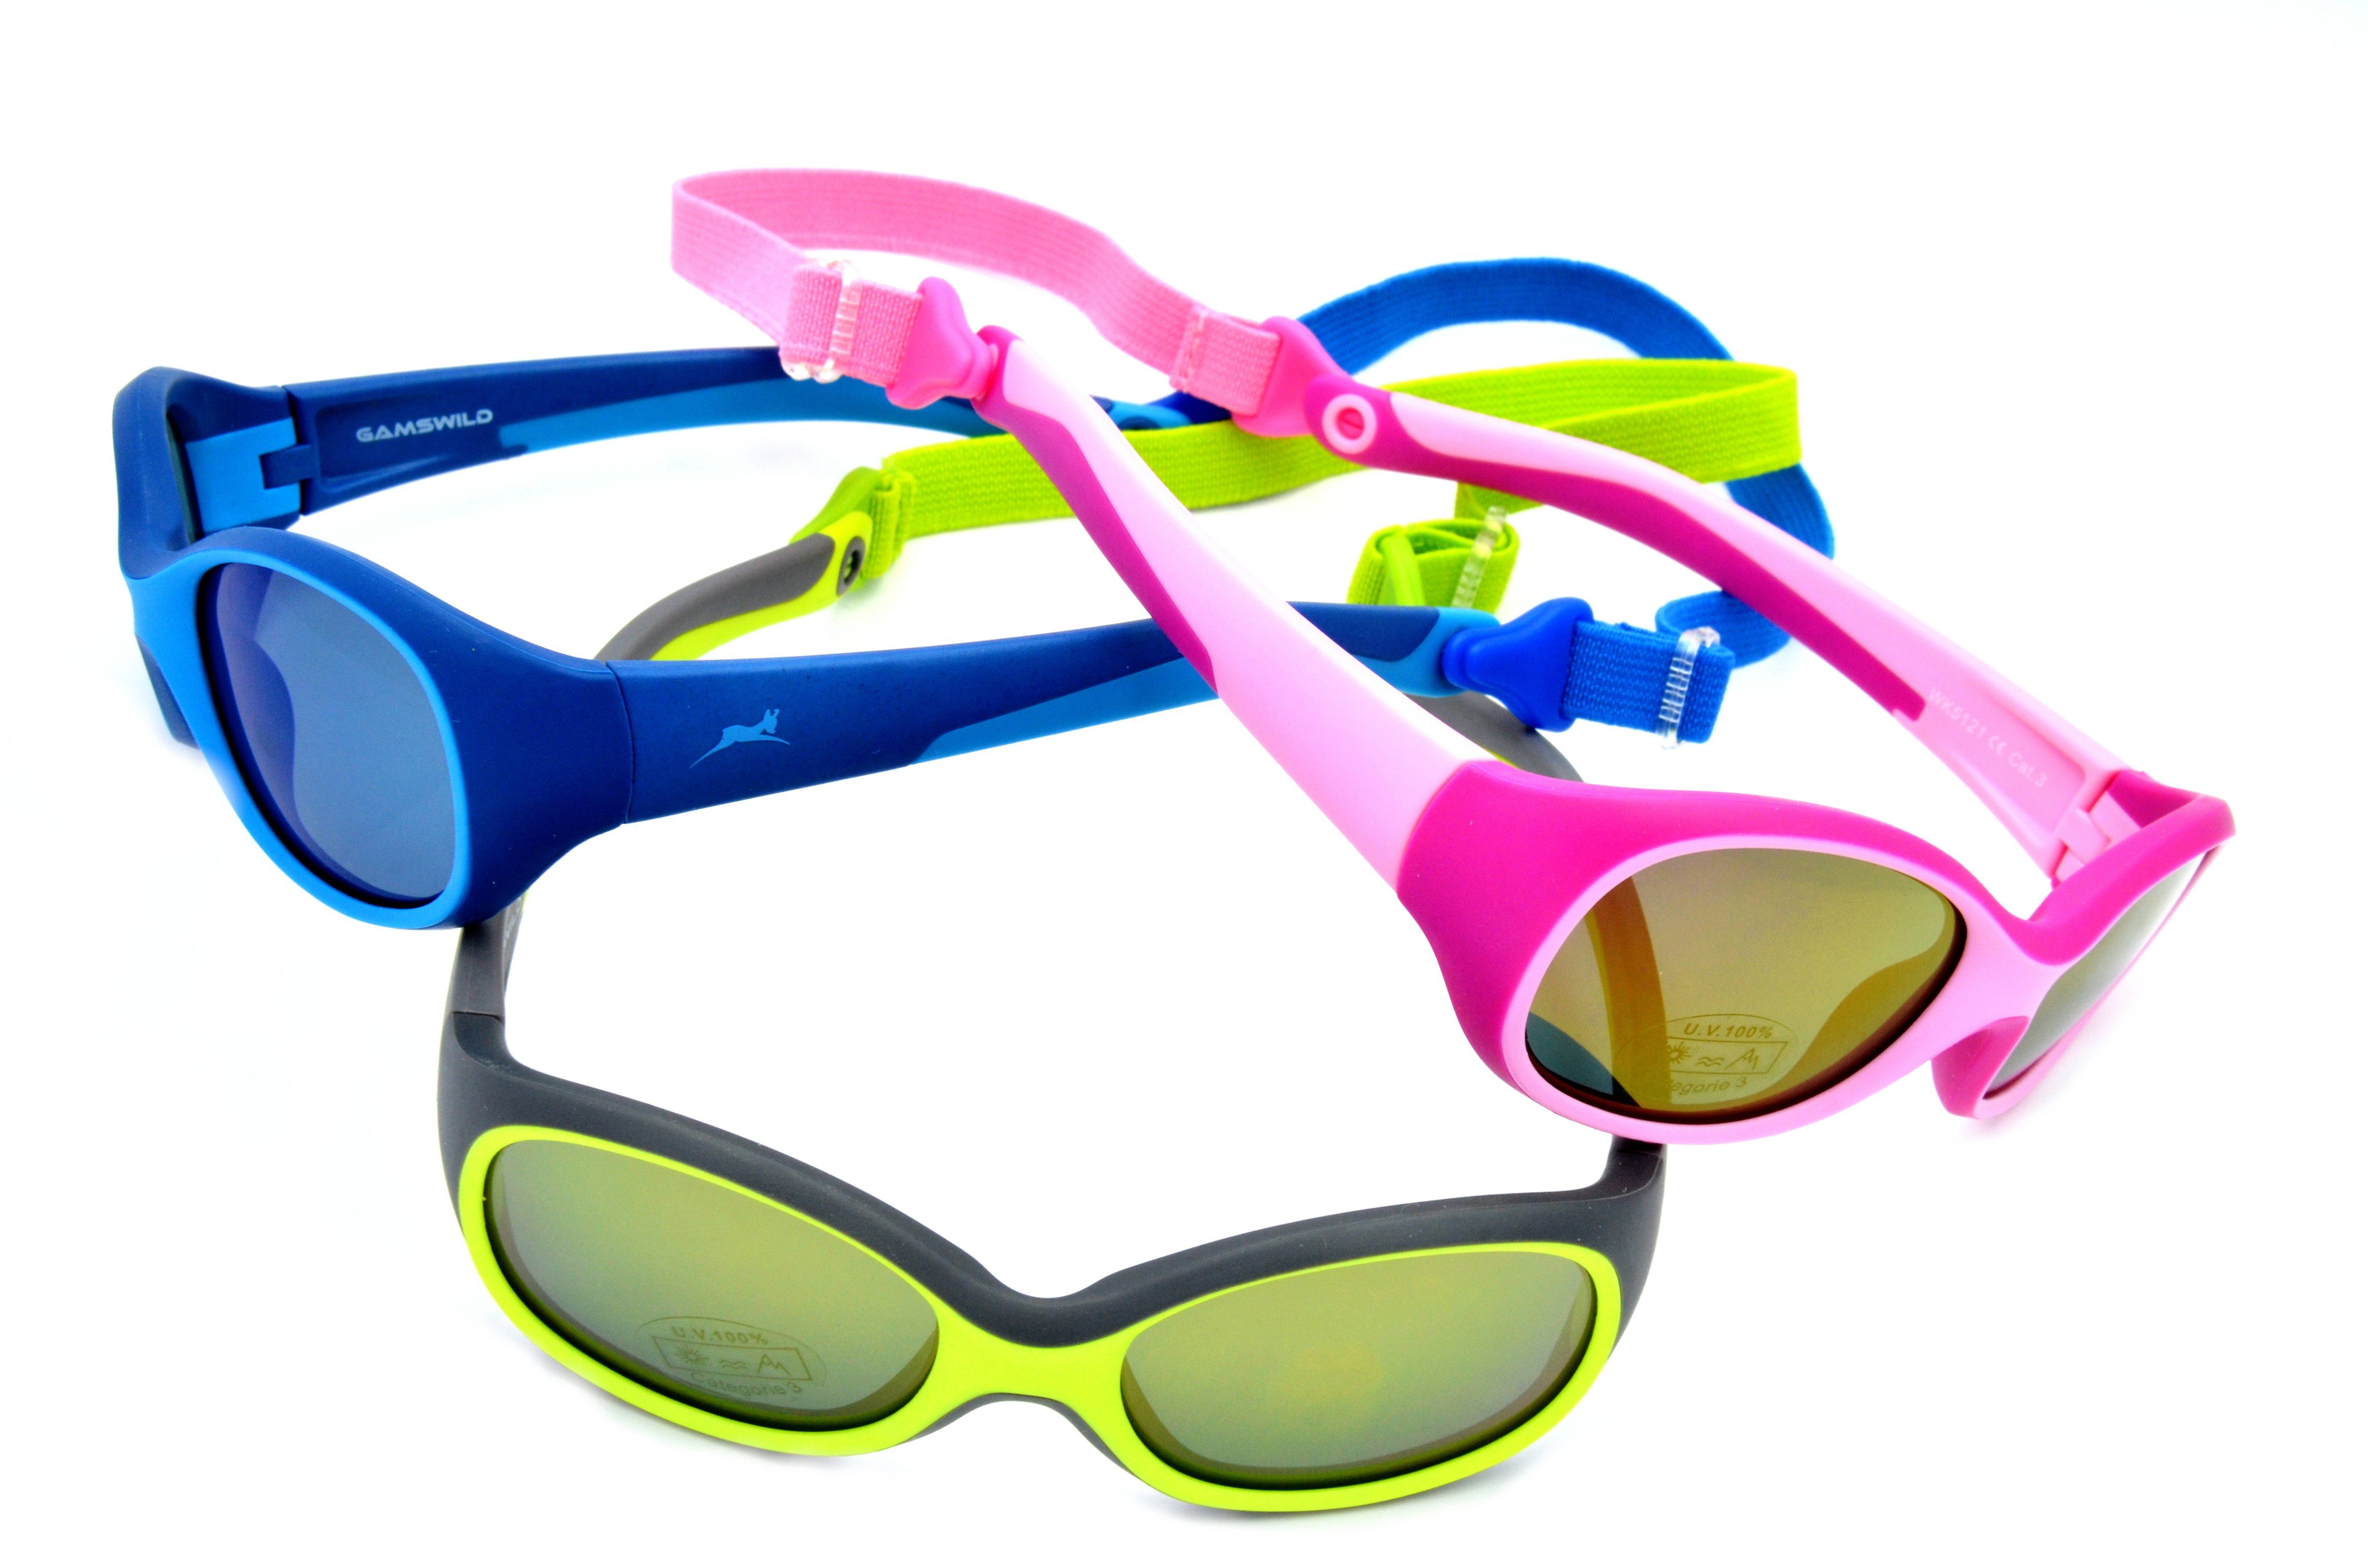 Kinderbrille Unisex, Mädchen WK5121 rosa Gamswild grün, 3-6 Sonnenbrille Jahre kids Jungen blau, Kleinkindbrille GAMSKIDS